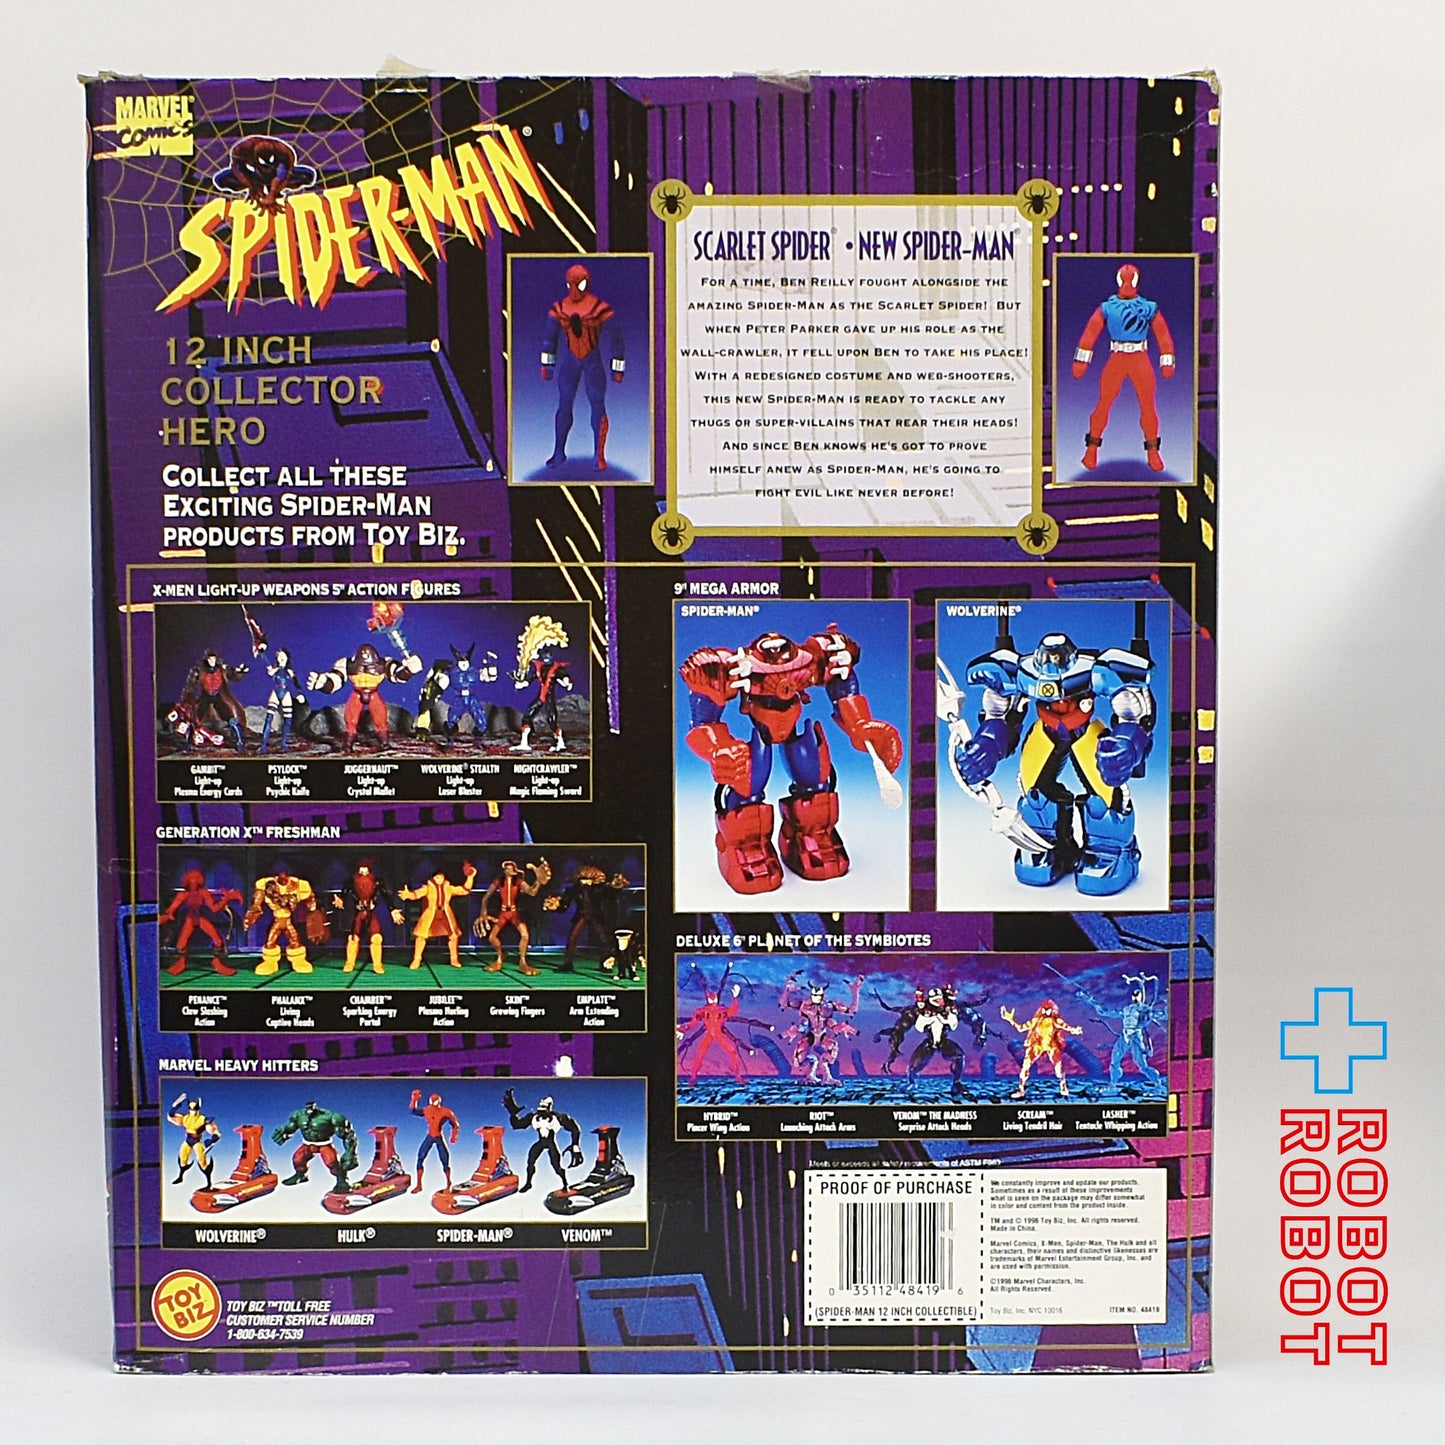 トイビズ スペシャル コレクターズ エディション スペクタキュラー スパイダーマン 12インチ コレクターヒーロー